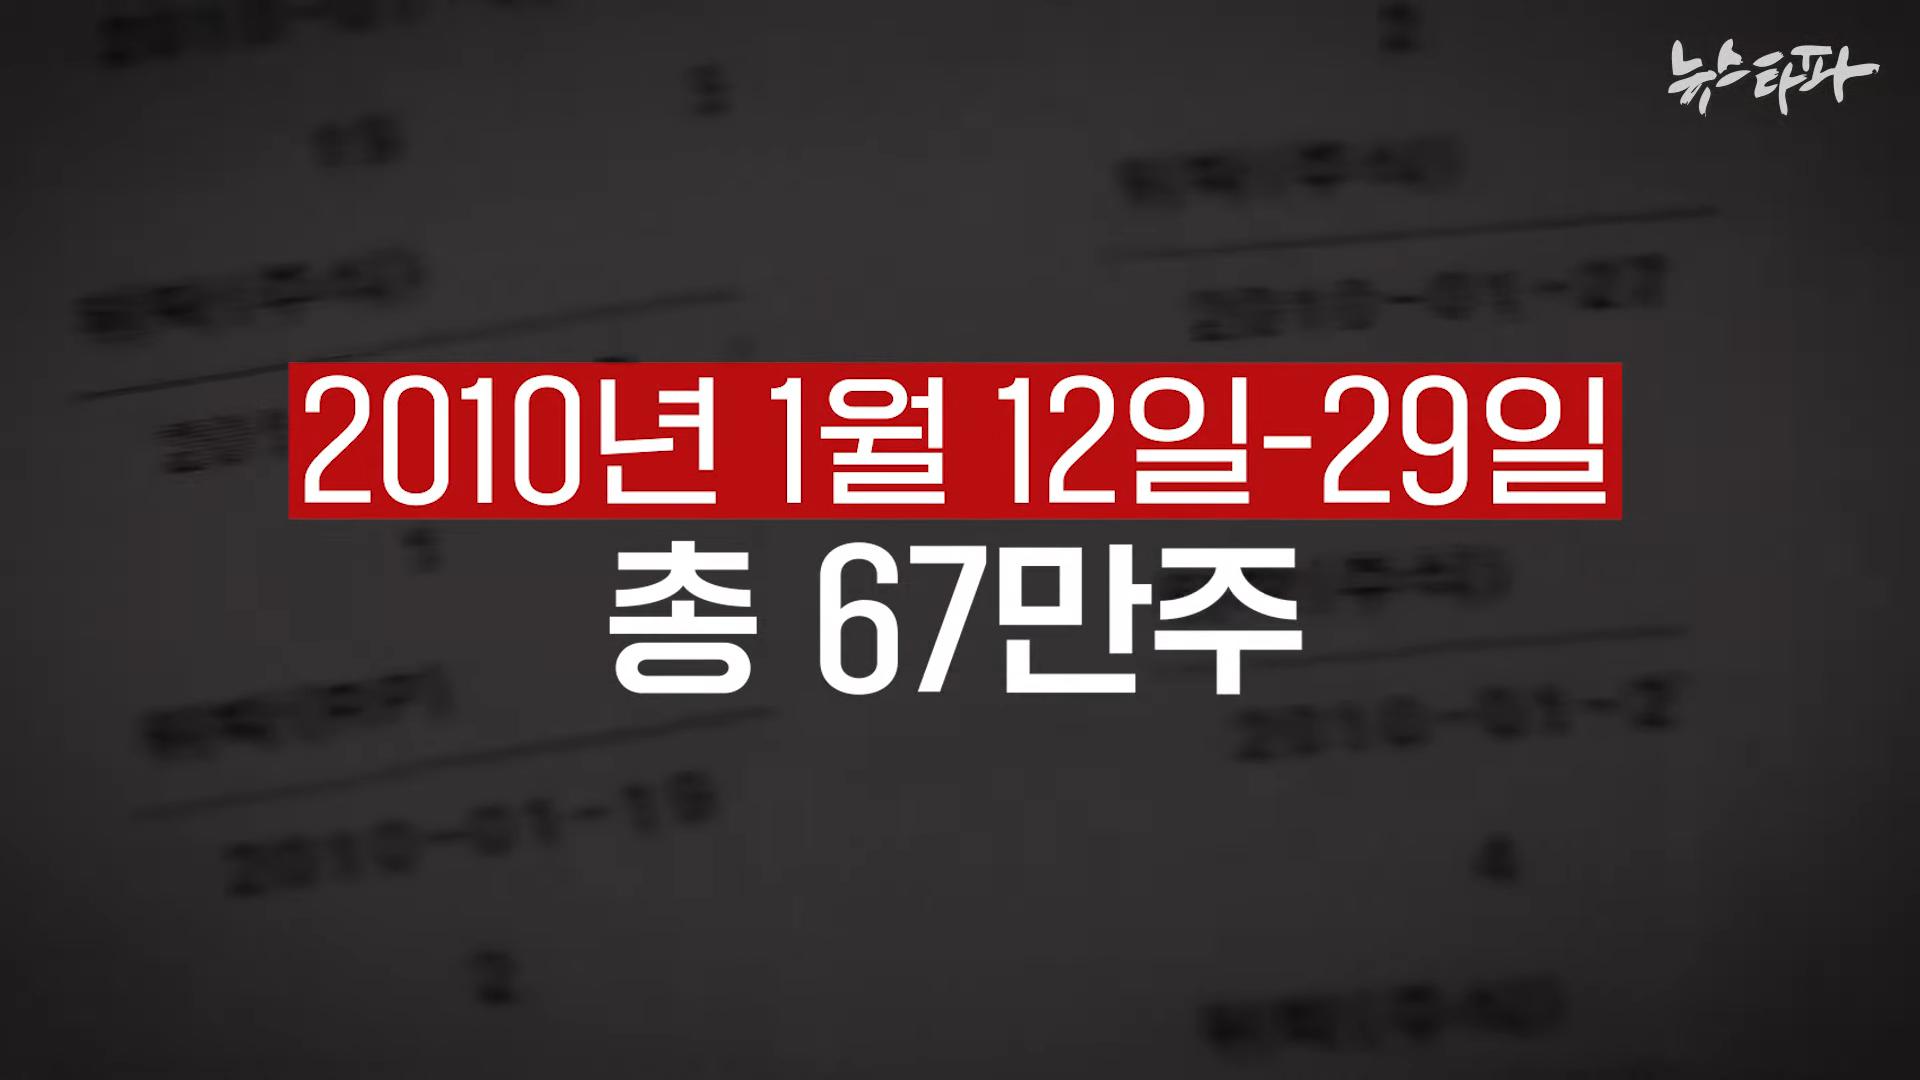 김건희 도이치모터스 녹취록 공개. 대통령 거짓말 드러났다 - 뉴스타파 2-35 screenshot.png.jpg